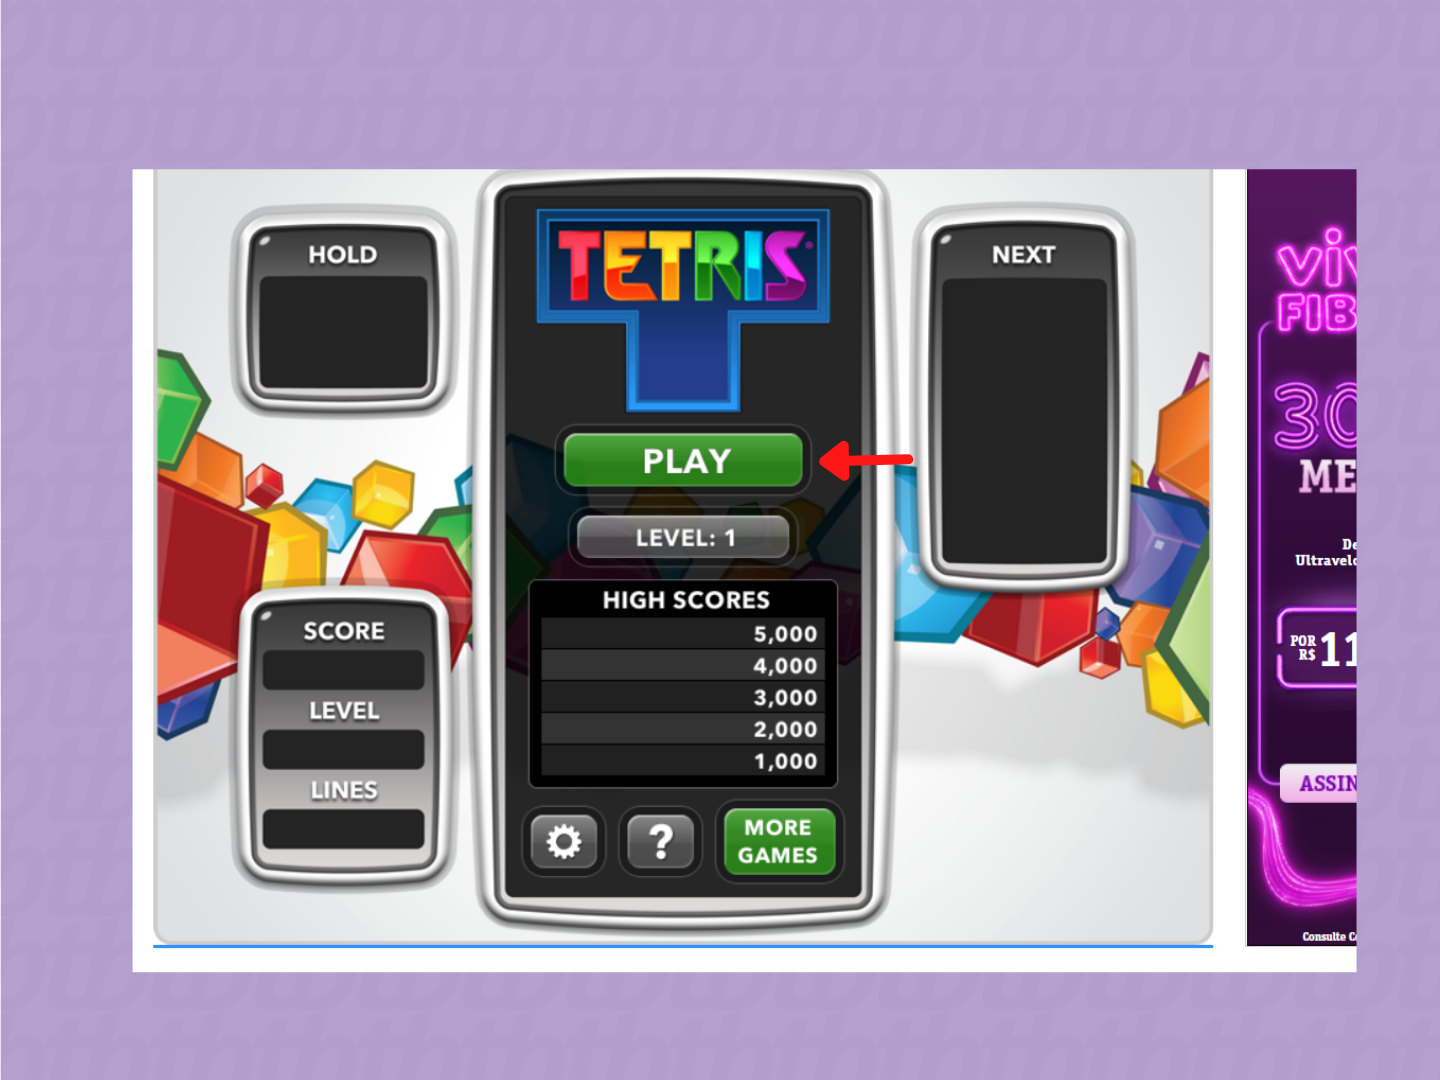 Tela de início do Tetris online